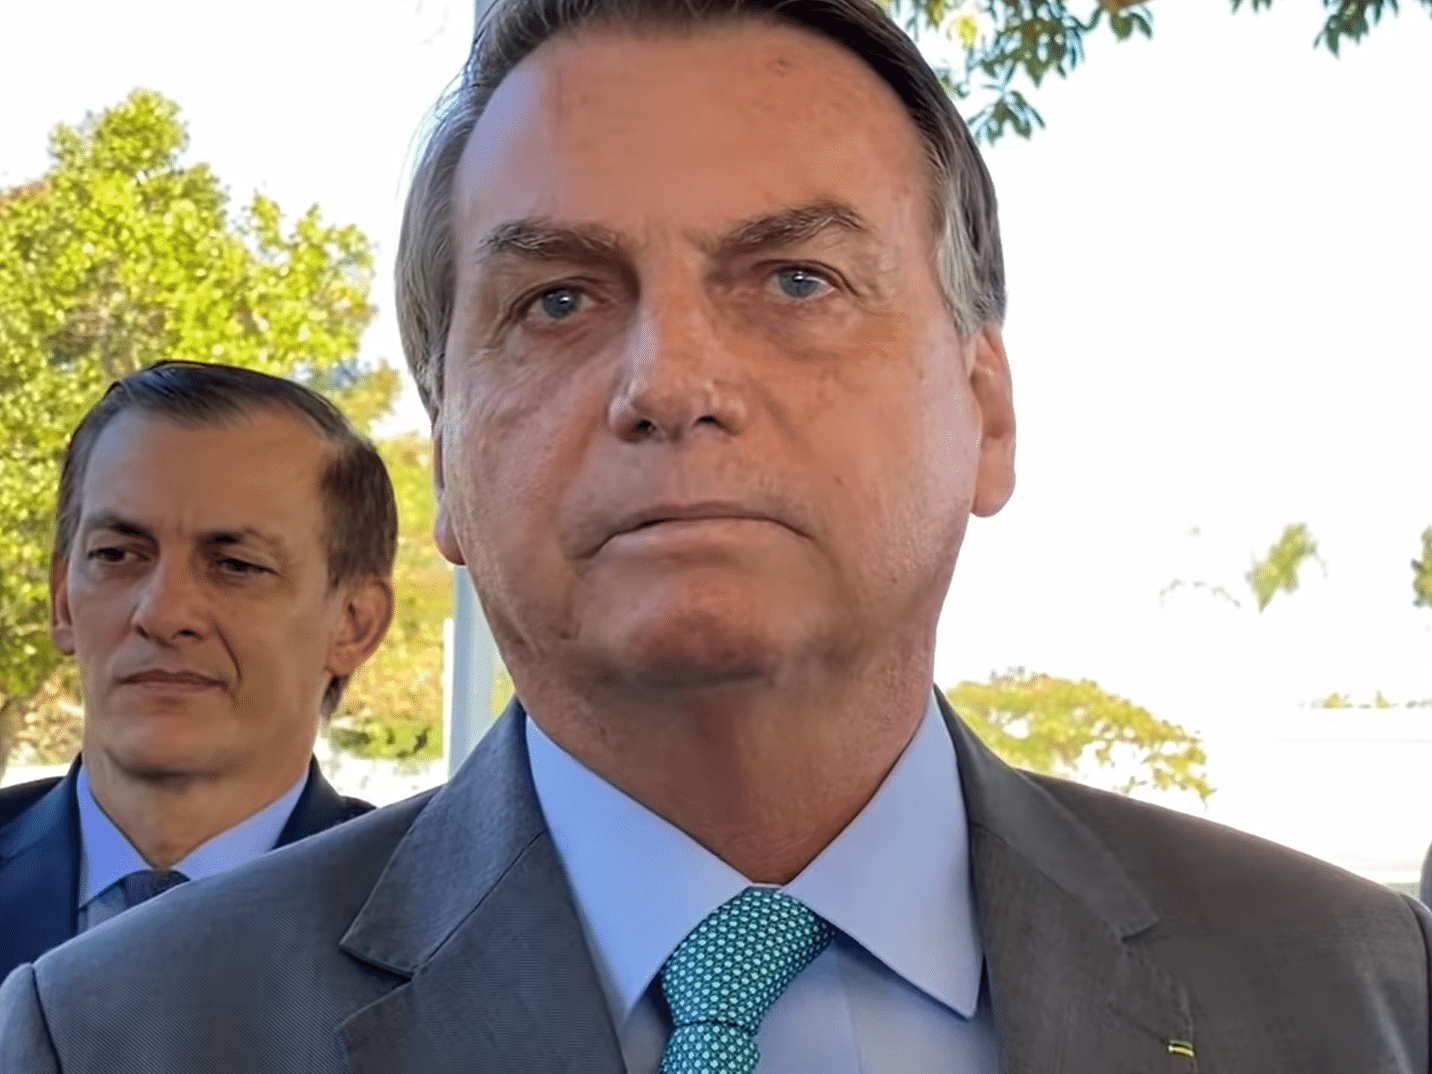 "Impedrejável", Bolsonaro evita falar em corrupção e mira "comunistas"